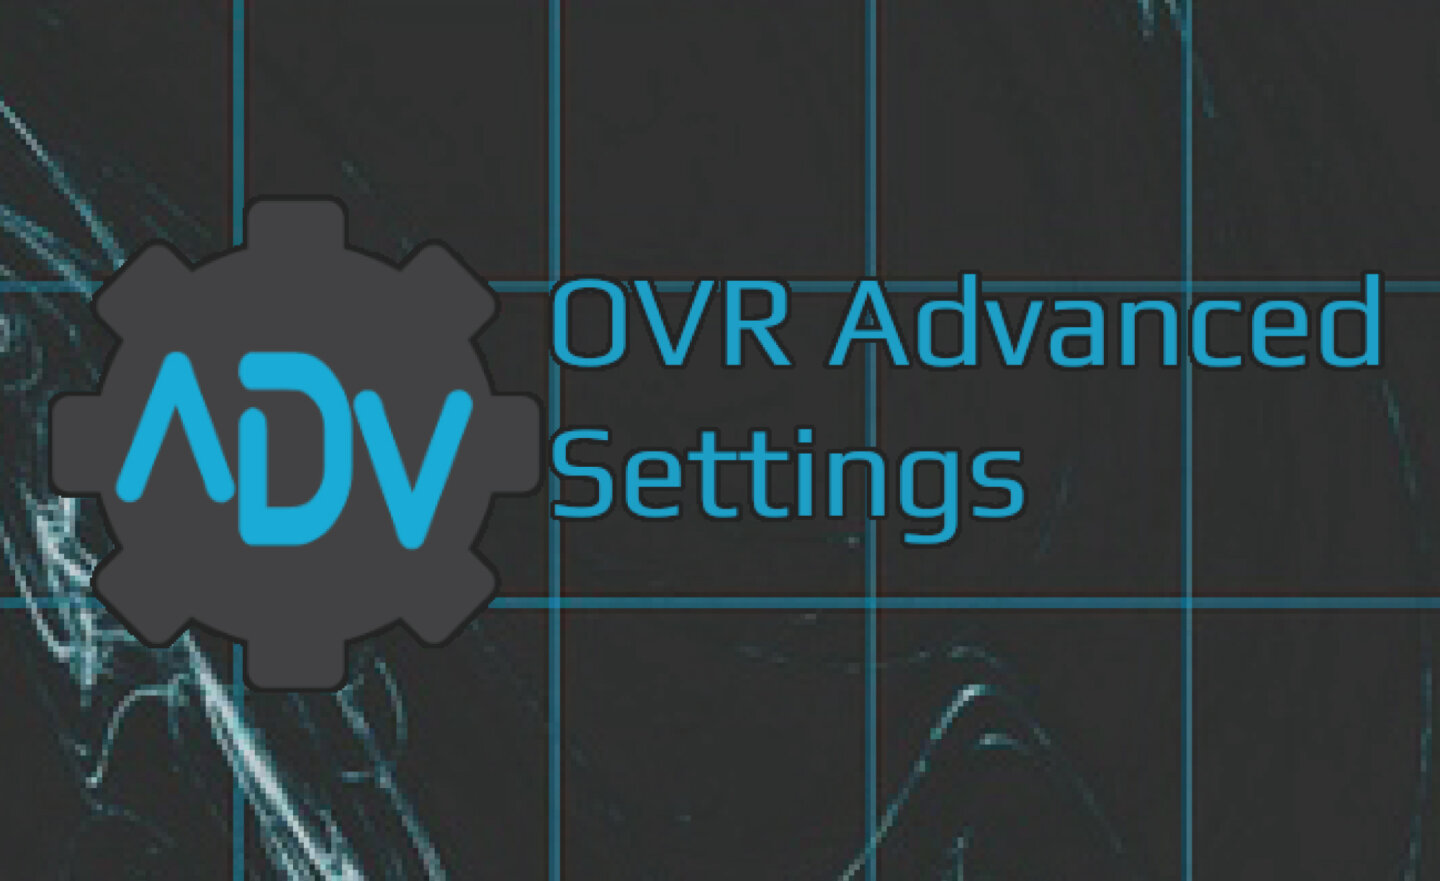 【限時免費】Steam 放送 VR 工具《OVR Advanced Settings》，4 月 14 日前永久保留